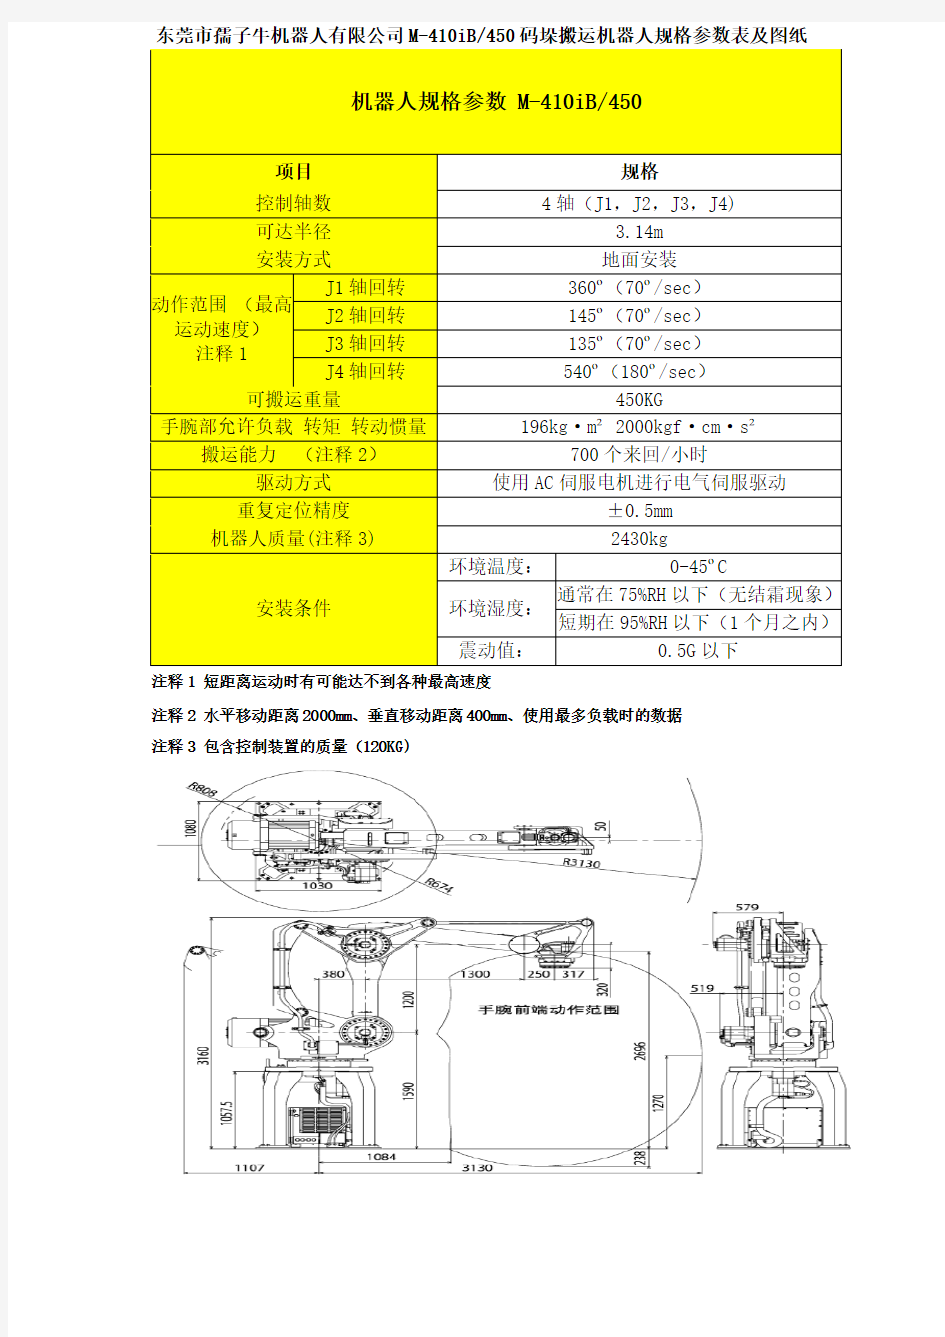 东莞市孺子牛机器人有限公司M-410iB-450码垛搬运机器人规格参数表及图纸